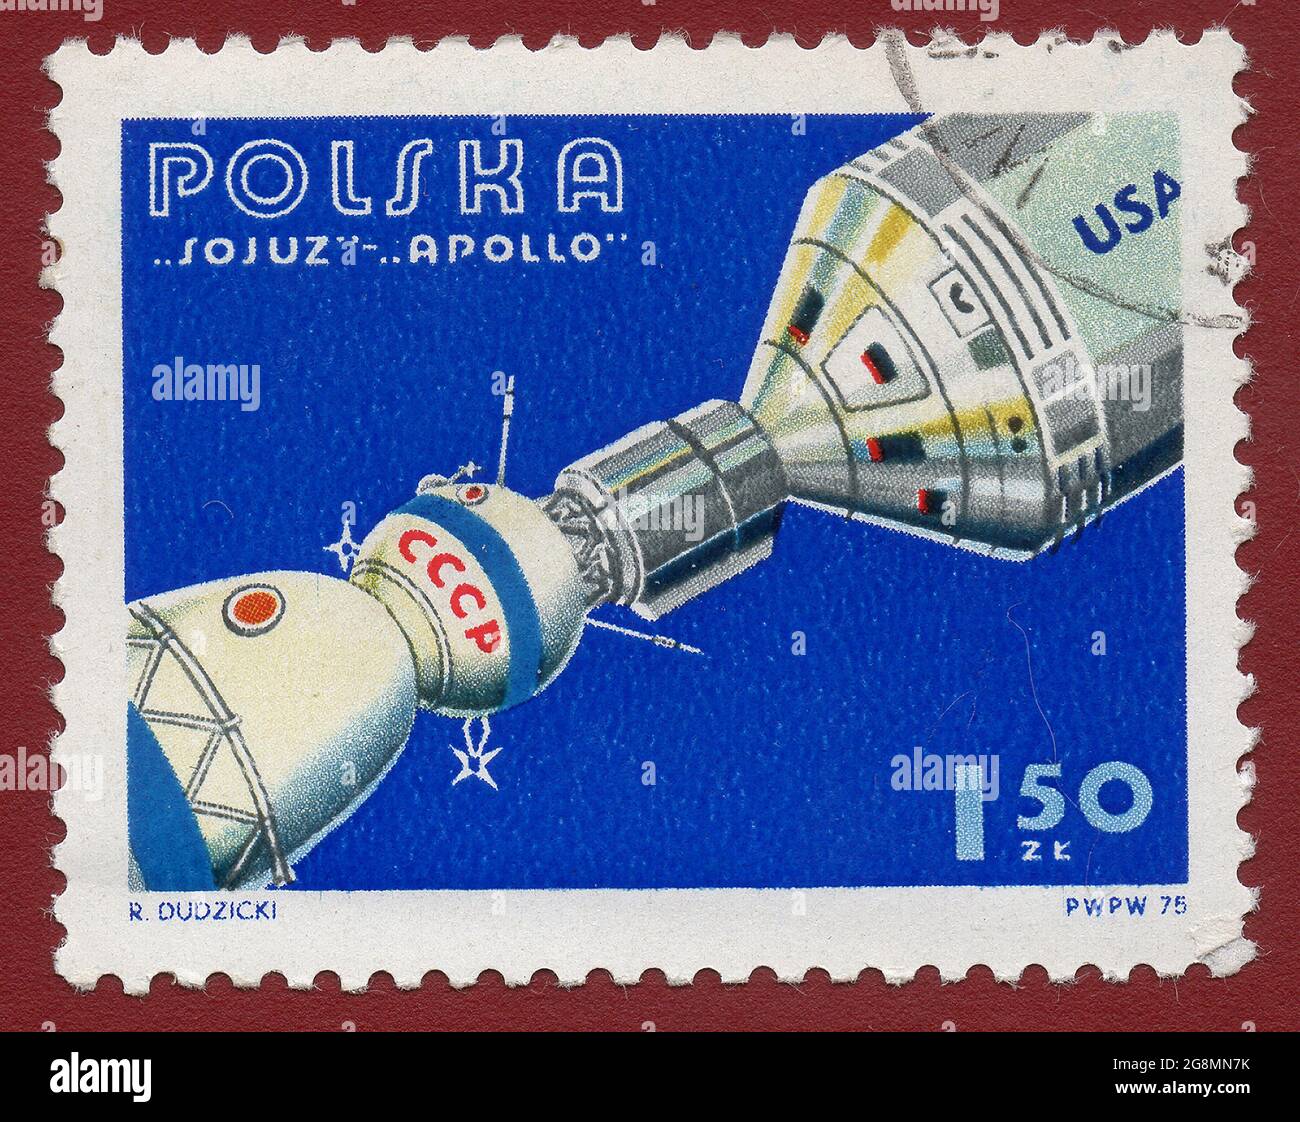 Polen - UM 1975: Eine in Polen gedruckte Briefmarke zeigt einen experimentellen Flug der Sojus- und Apollo-Raumsonde, um 1975. Stockfoto